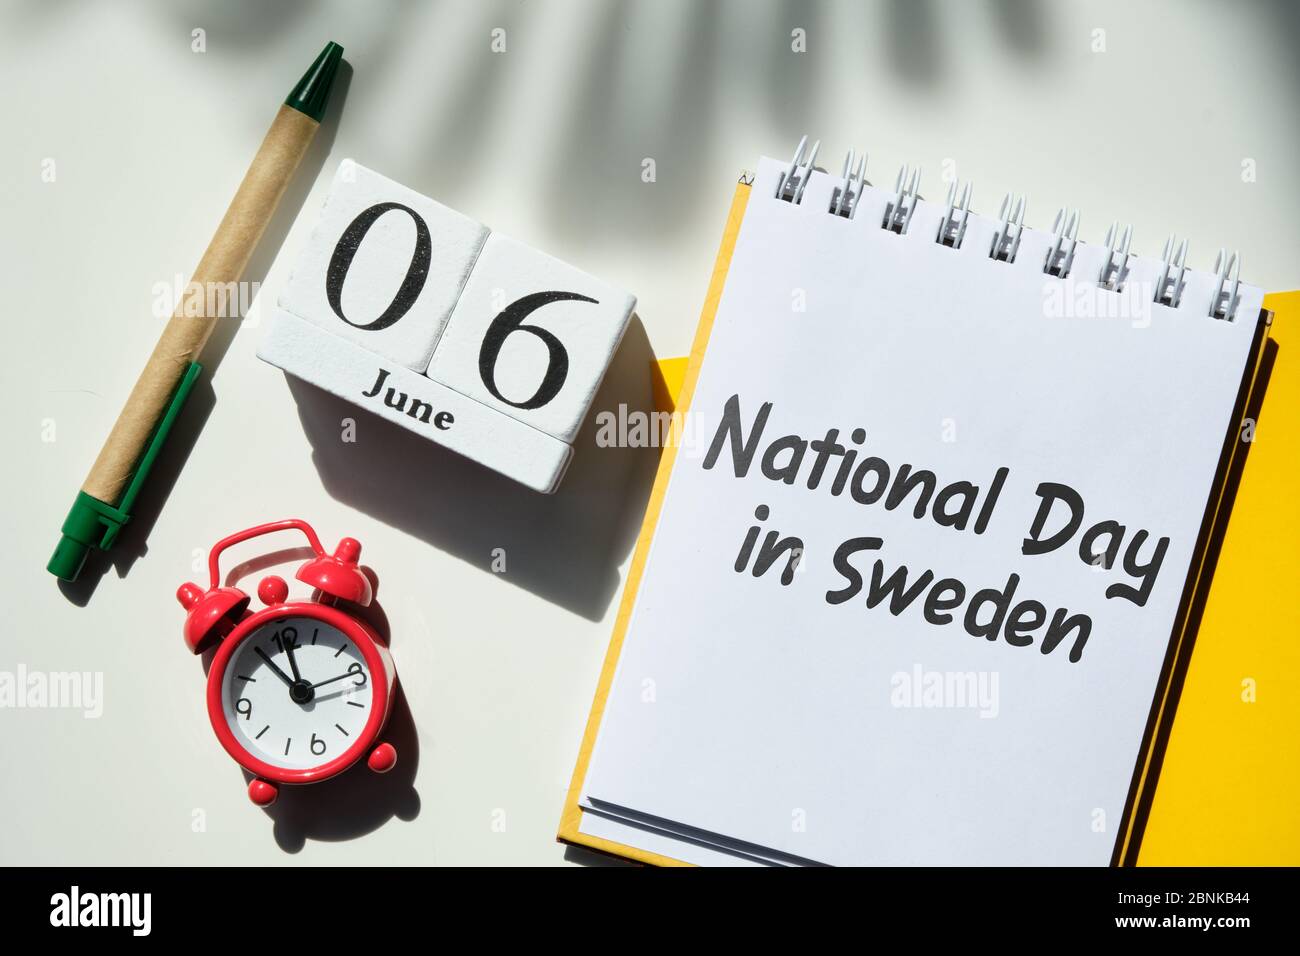 Nationalfeiertag in Schweden 06 Sechster juni Monat Kalenderkonzept auf Holzblöcken. Nahaufnahme. Stockfoto